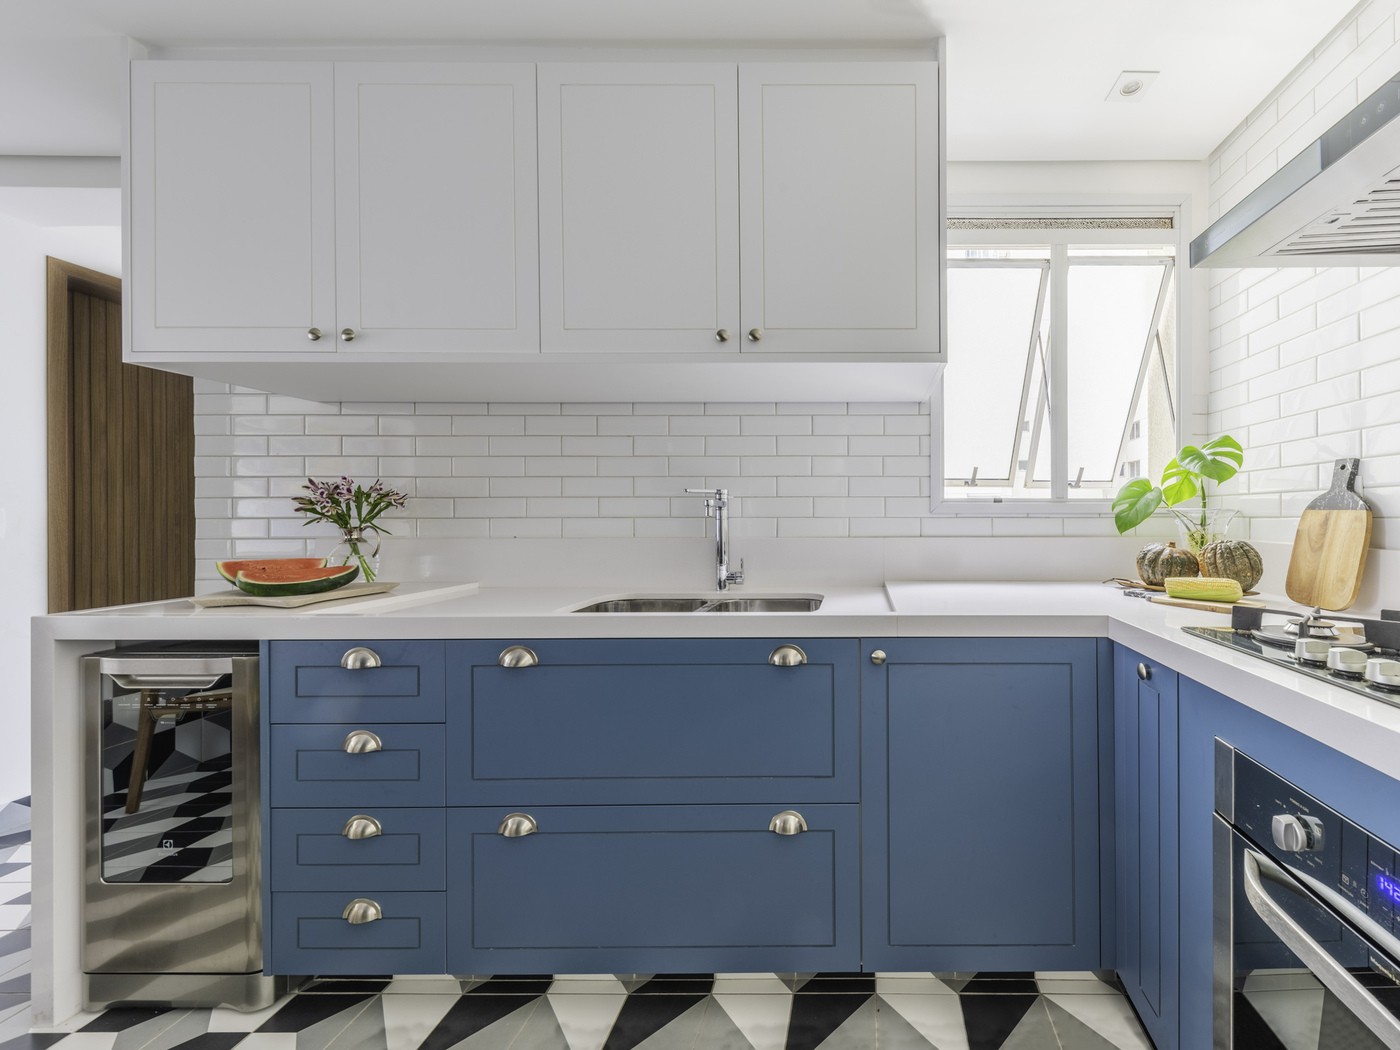 Décor do dia: cozinha com armários azuis tem mix de revestimentos (Foto: Guilherme Pucci)